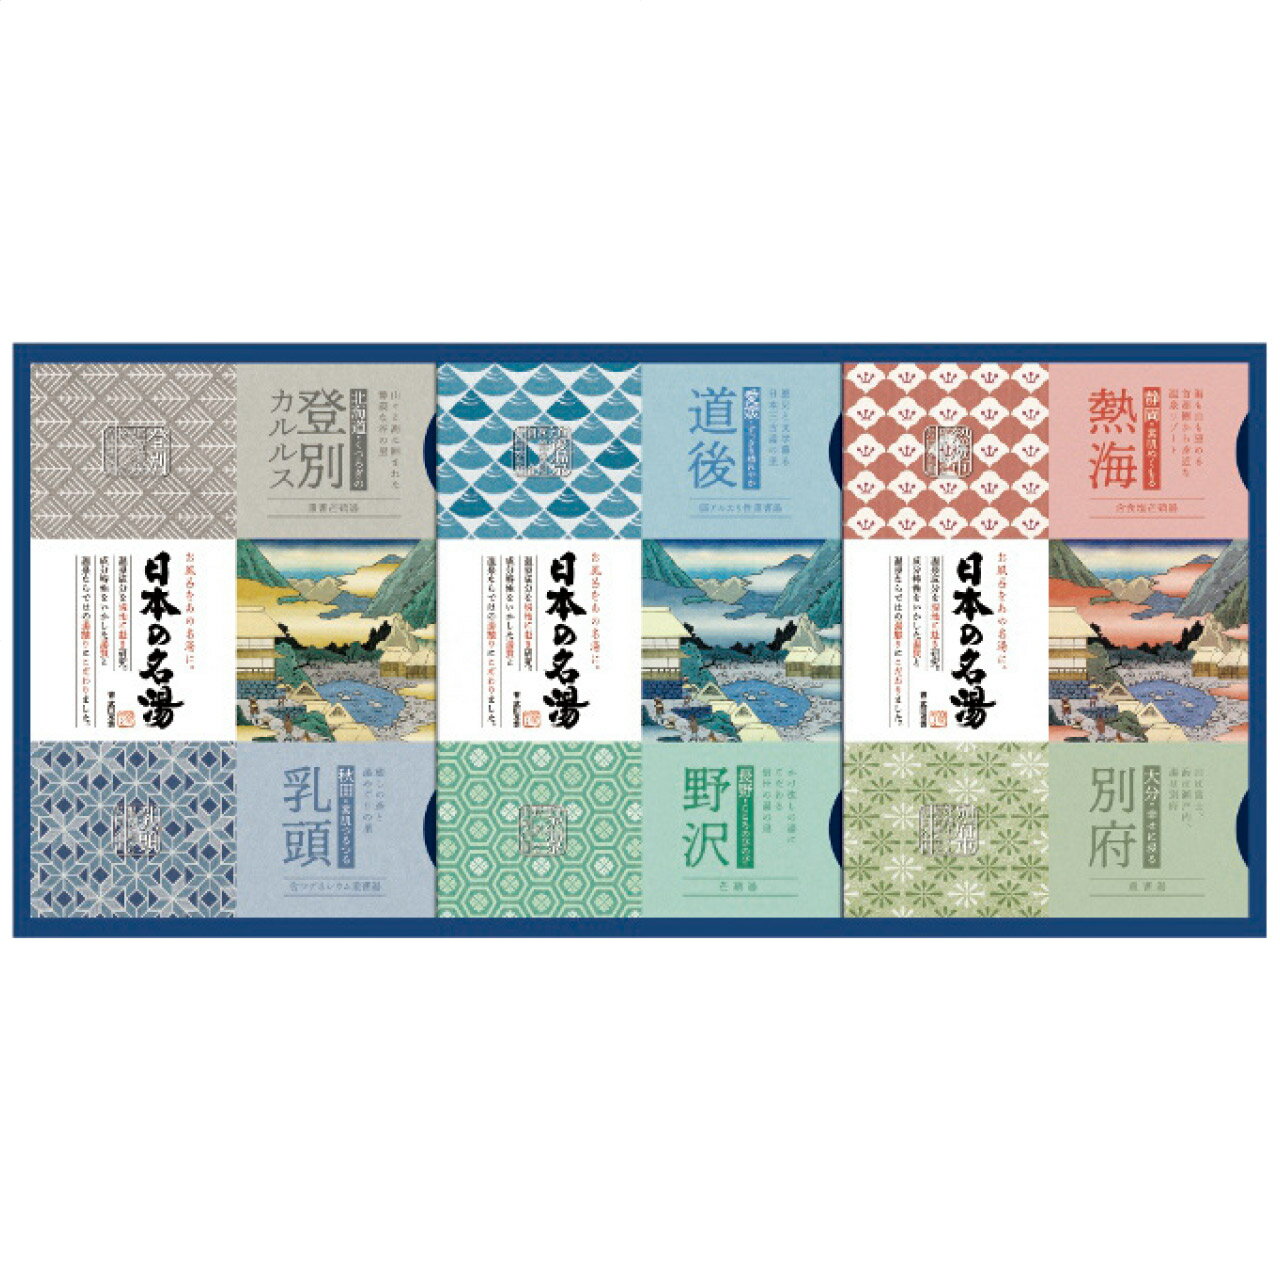 レビューを書いて　緑花堂5％OFFクーポンGET！ レビューを書いたらメールでお知らせくださいね 家庭で楽しめる日本の名湯ギフトセット。温泉科学プロジェクトから開発された、ご自宅のお風呂で本格的な温泉気分が満喫できる、こだわりの温泉タイプ入浴剤です。 ●商品名日本の名湯オリジナルギフトセット CMOG-20 日本製 ●商品番号商品番号:APD2287-034 ●現品サイズ・内容30g入浴剤(登別カルルス ・乳頭 ・別府 ・熱海各3個 ・道後 ・野沢各2個) ・［日本製］ ●生産地日本製 ●重さ752g ●ご注文前に在庫確認のお問合せをお勧めしております。 ●お電話 03-6821-3485、お問合せフォーム、商品ページからもお問合せできます。日本の名湯オリジナルギフトセット CMOG-20 日本製 ●在庫数が随時変動のため、ご注文前に在庫確認のお問合せをお勧めしております。 ●お電話 03-6821-3485、お問合せフォーム、商品ページからもお問合せできます。▼関連商品:商品カテゴリー ◇ 緑花堂セレクト＞ 美容・コスメ・香水＞ ボディケア